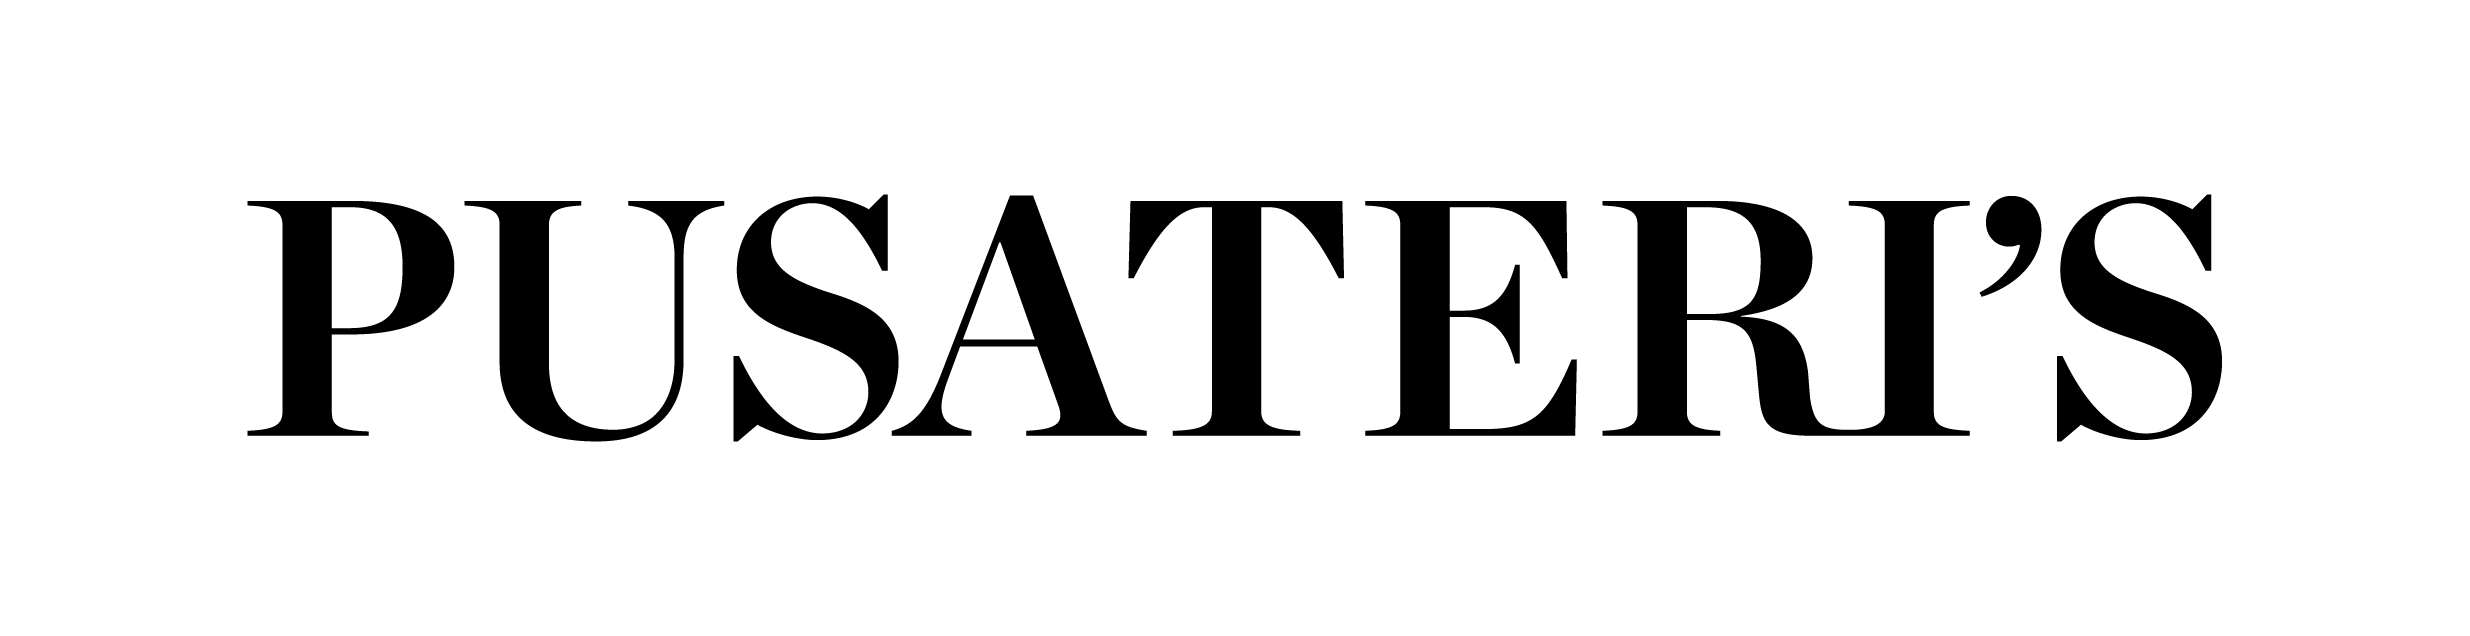 Pusateri's Logo-02.png